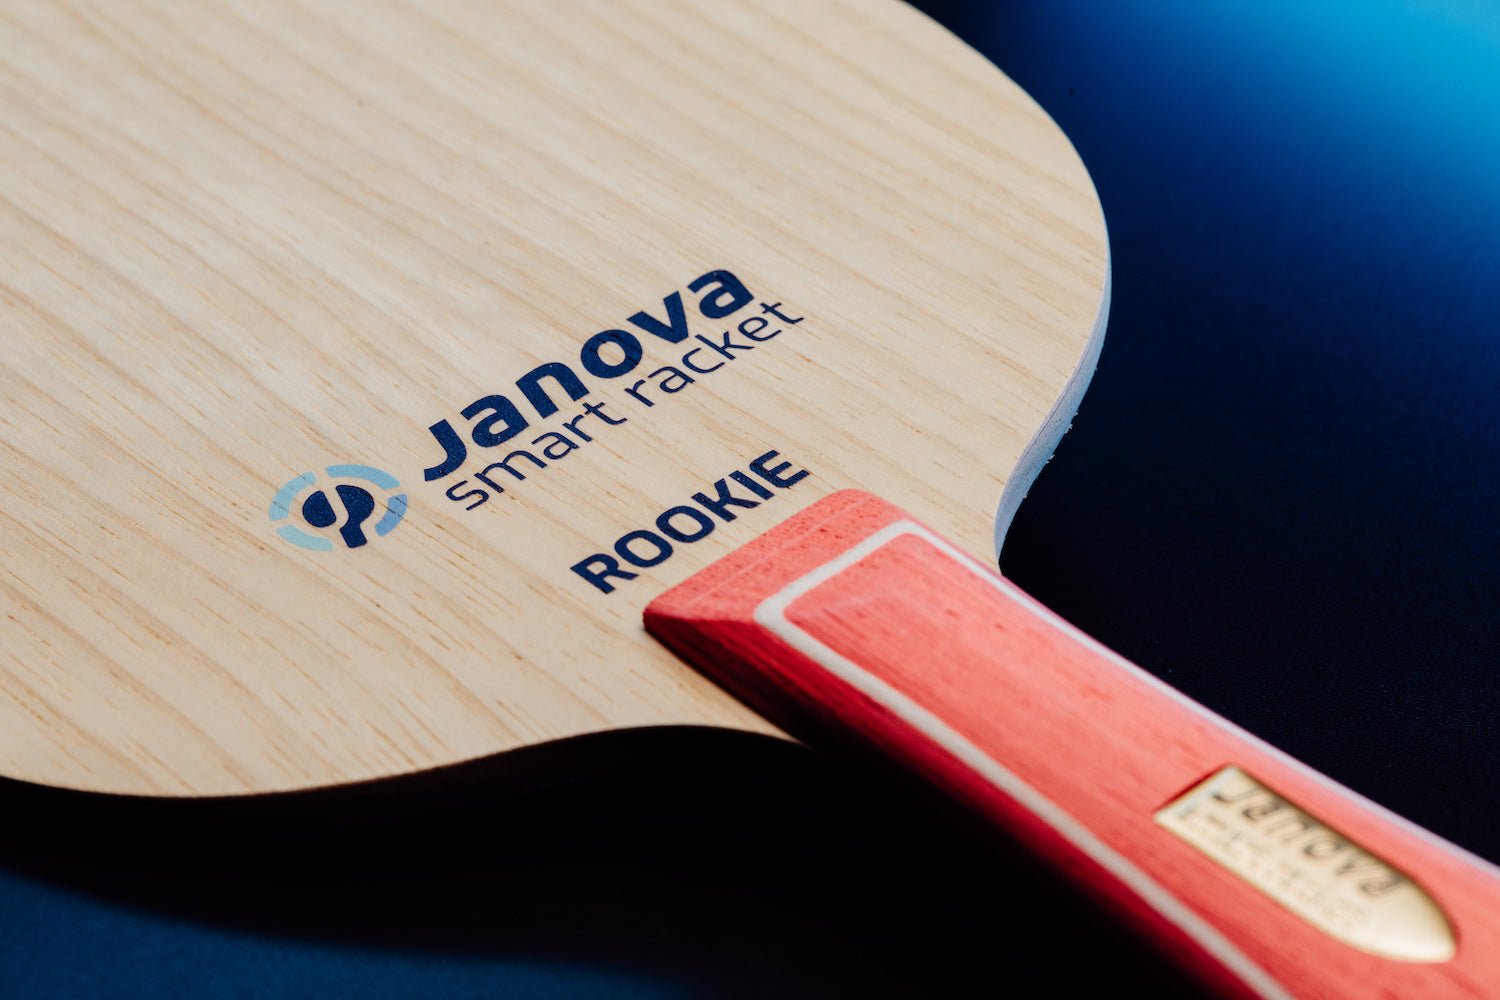 Smart Racket ROOKIE Tischtennisschläger auf Tischtennistisch, Detailansicht von Griff, Janova Sensor